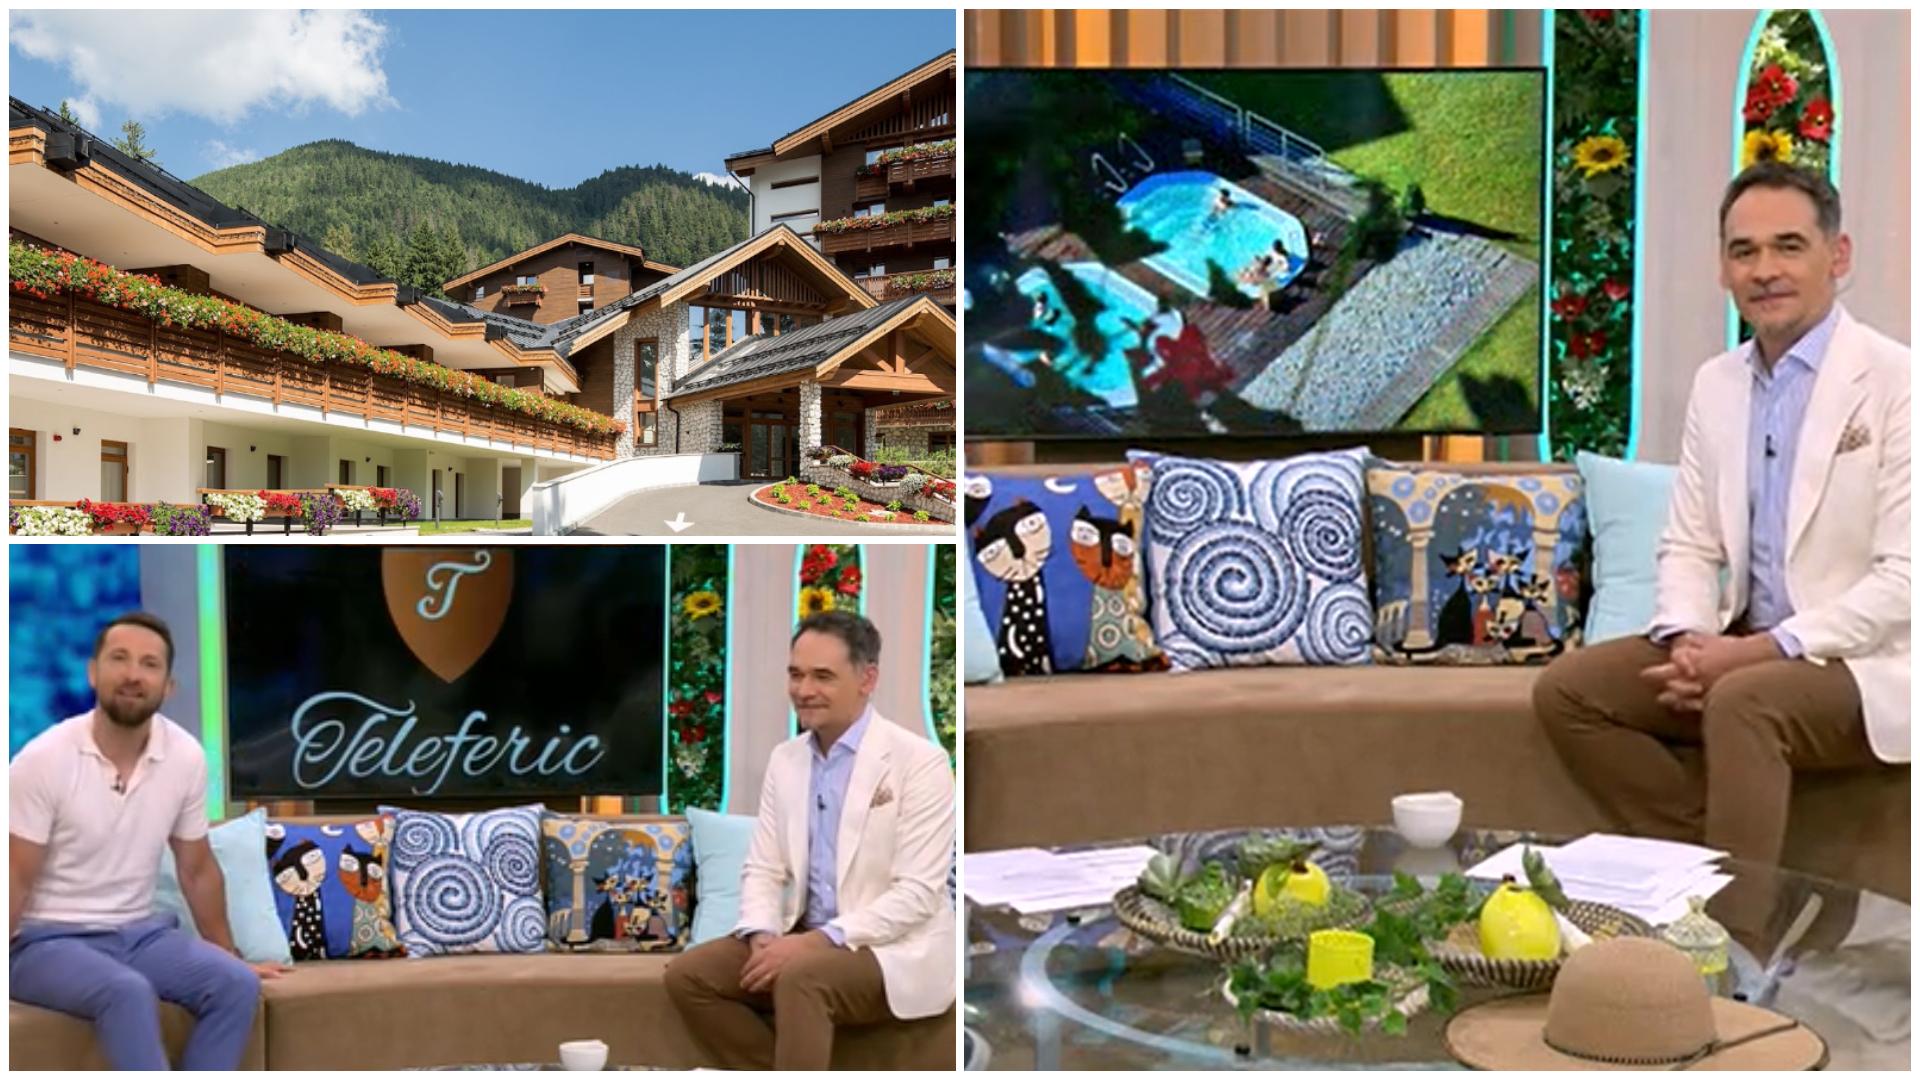 Răzvan și Dani au o recomandare pentru cei care își doresc o escapadă la munte: Teleferic Grand Hotel din Poiana Brașov